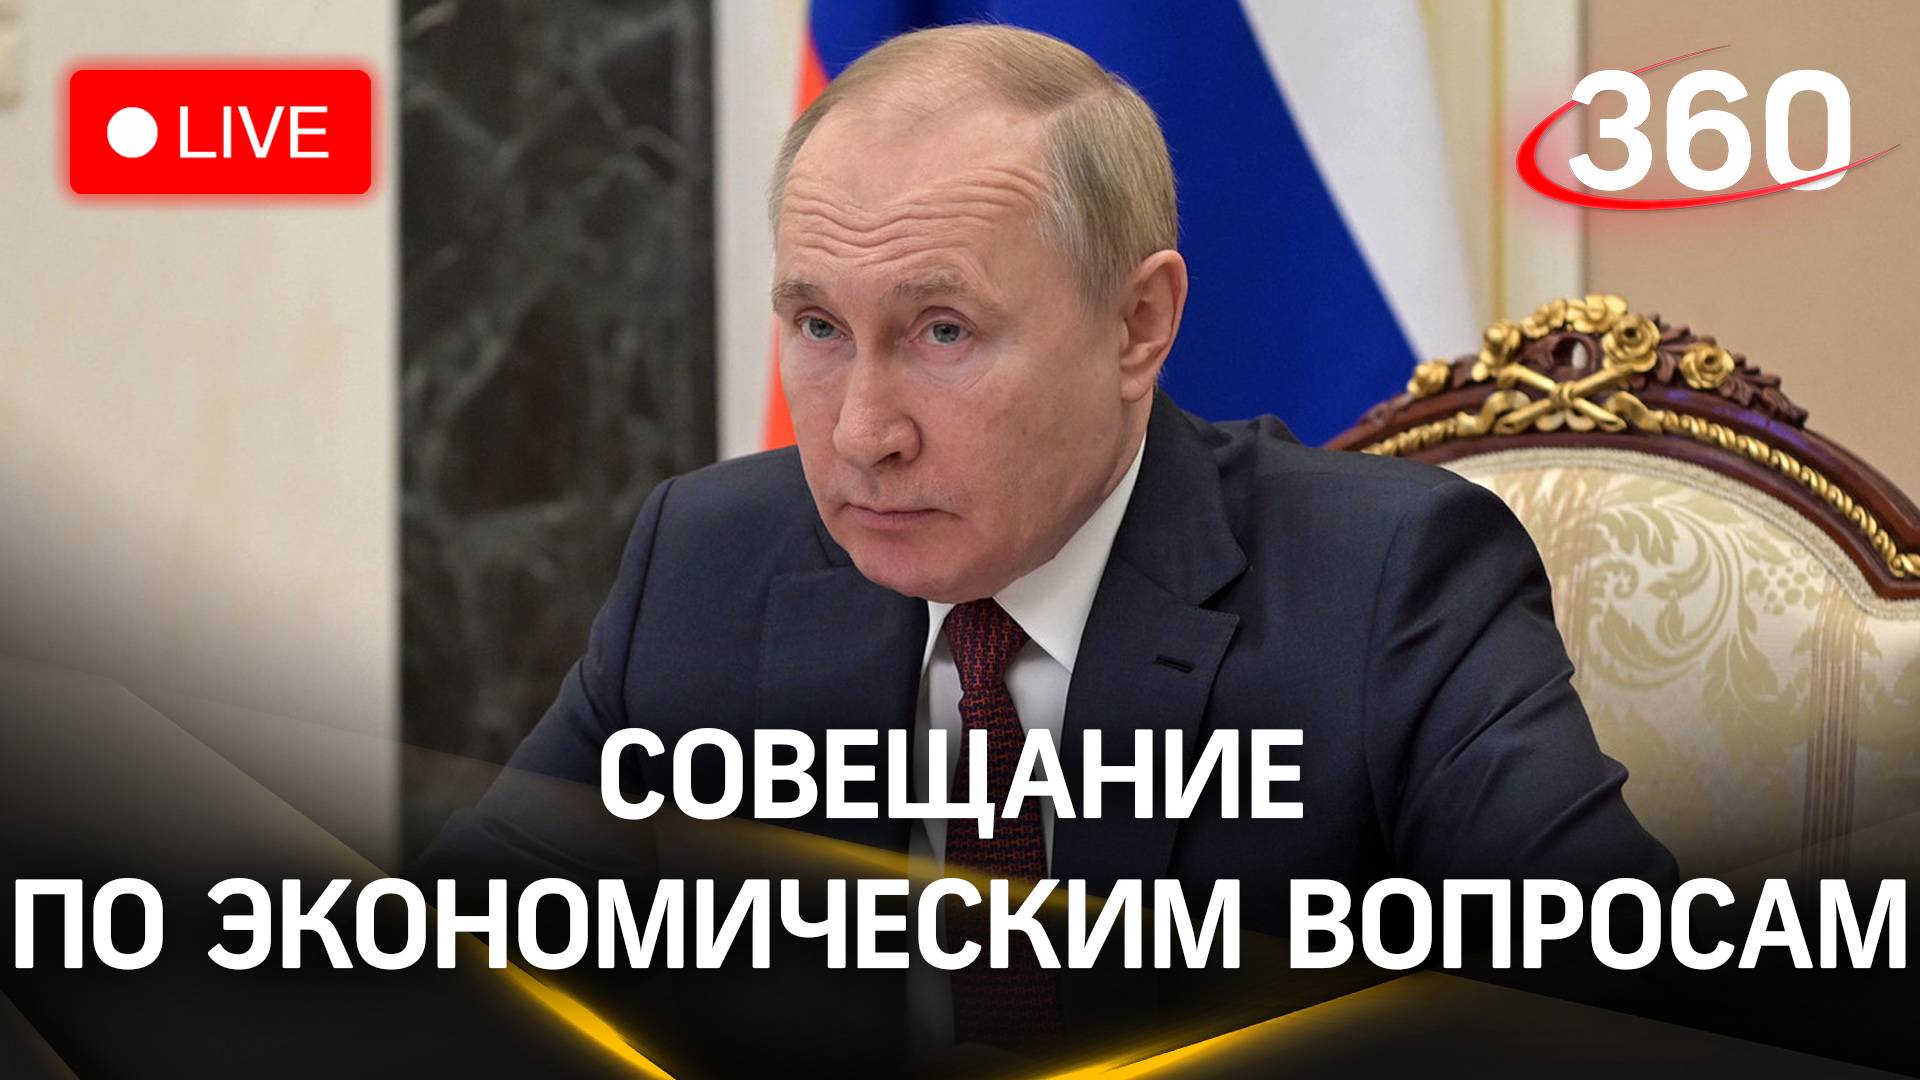 Совещание по экономическим вопросам | Владимир Путин. Прямая трансляция